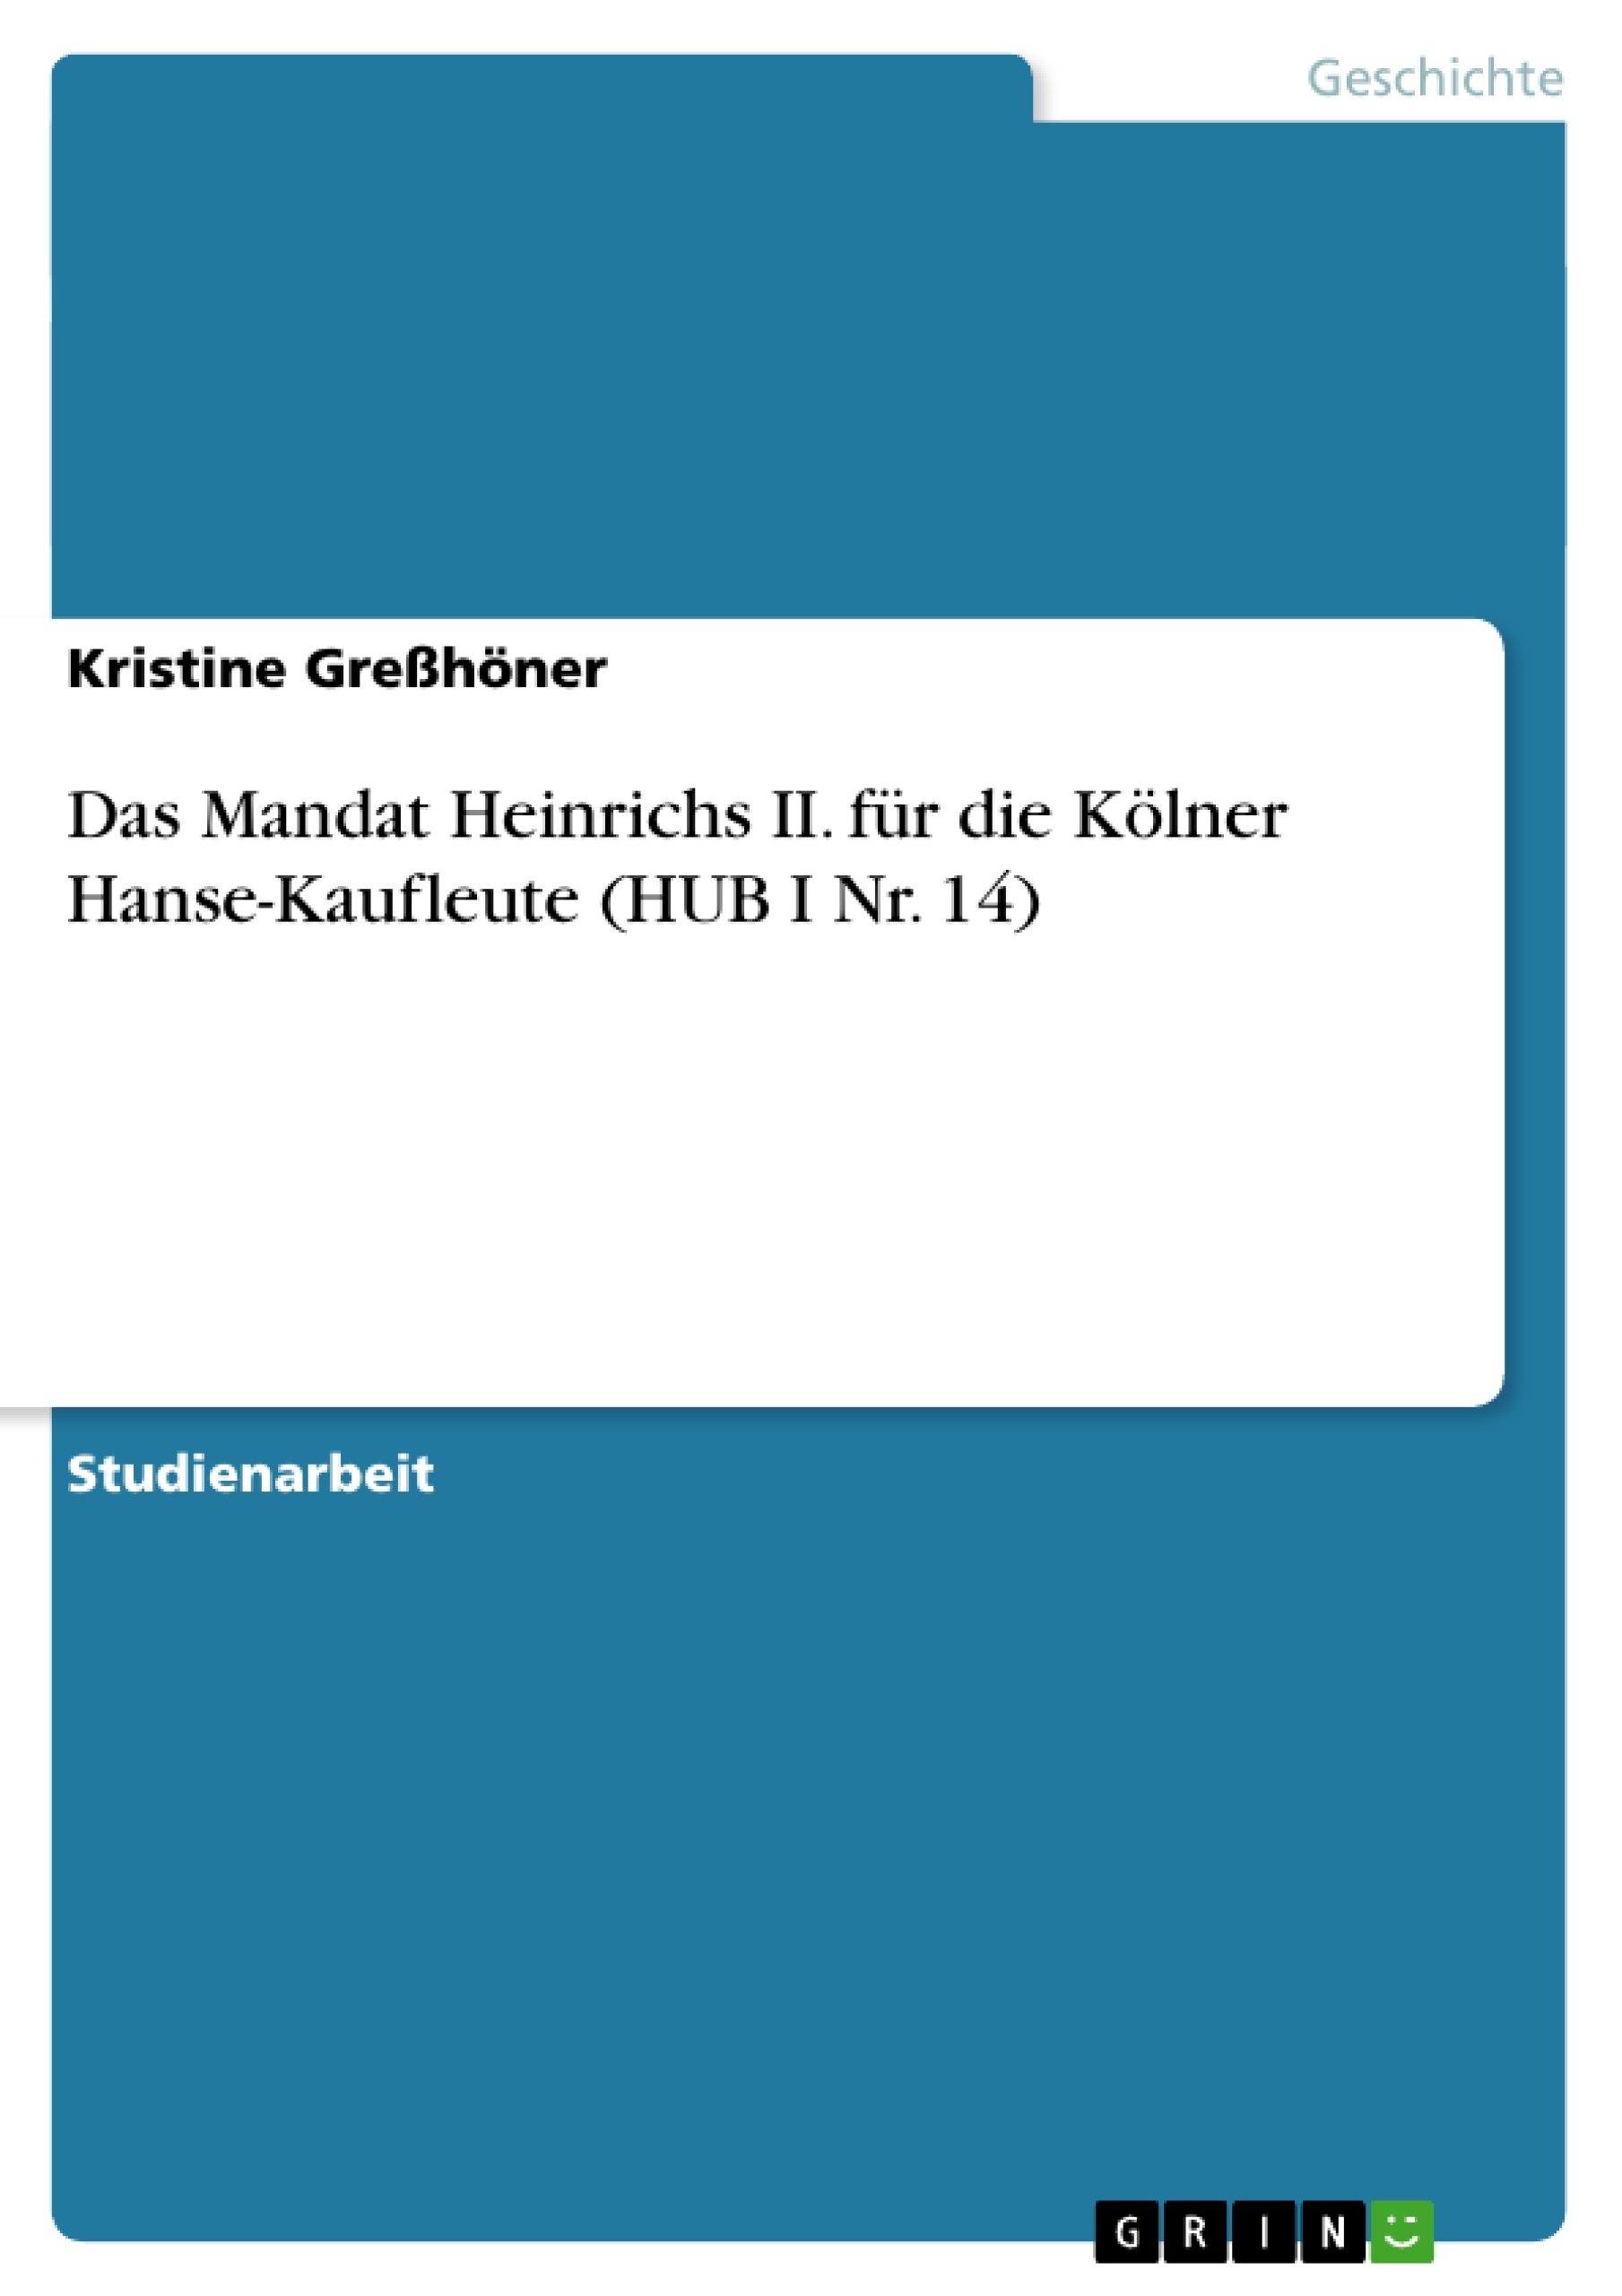 Título: Das Mandat Heinrichs II. für die Kölner Hanse-Kaufleute (HUB I Nr. 14)